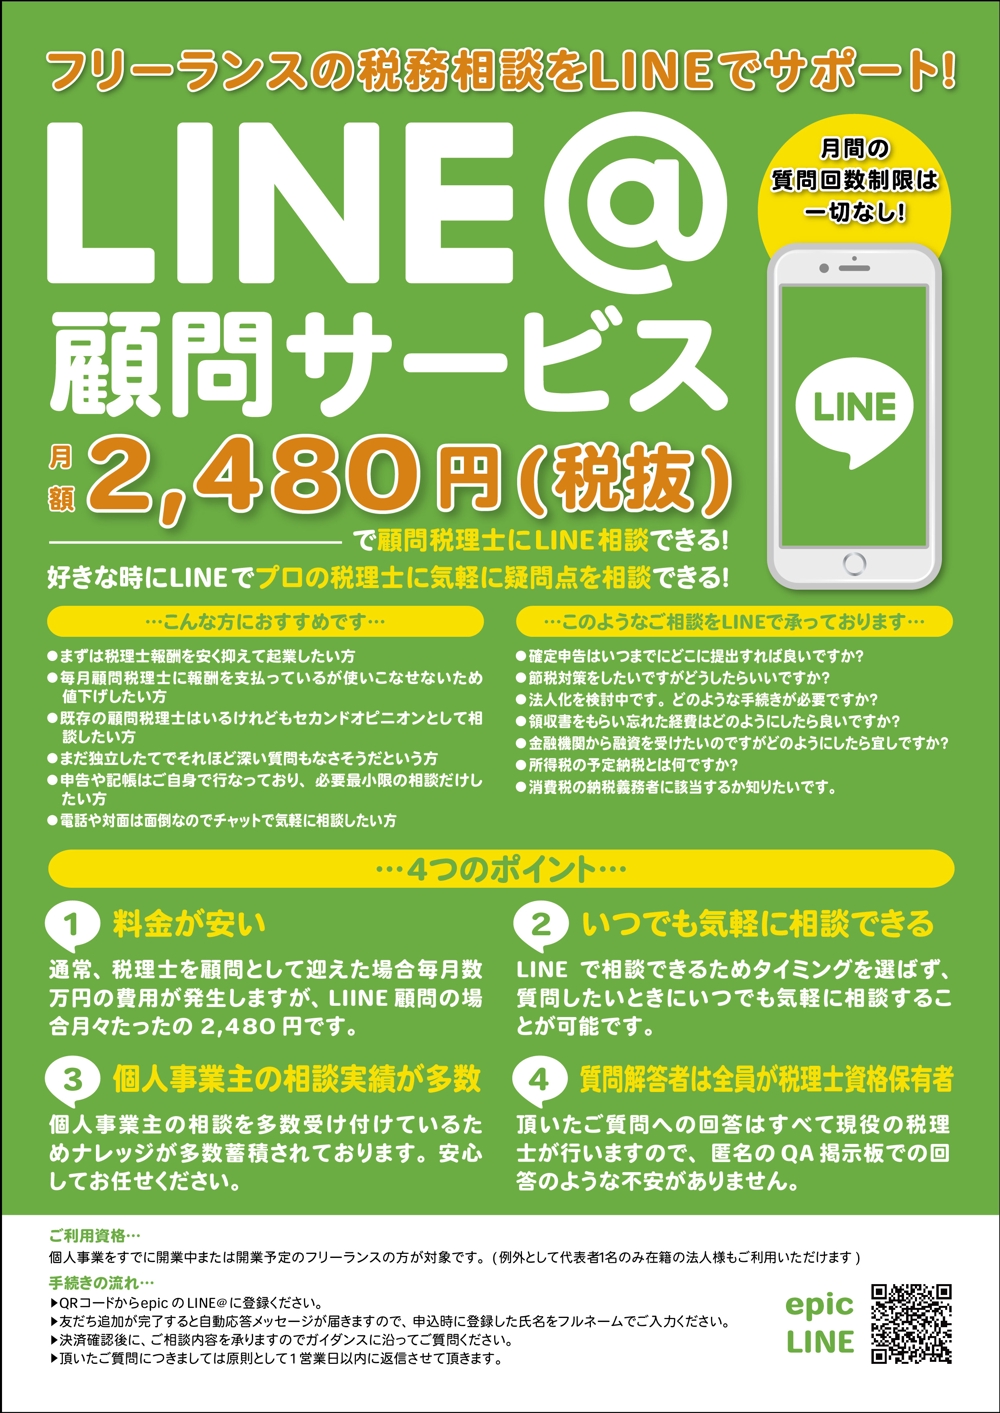 20190327-2_LINE顧問_チラシ-01.jpg